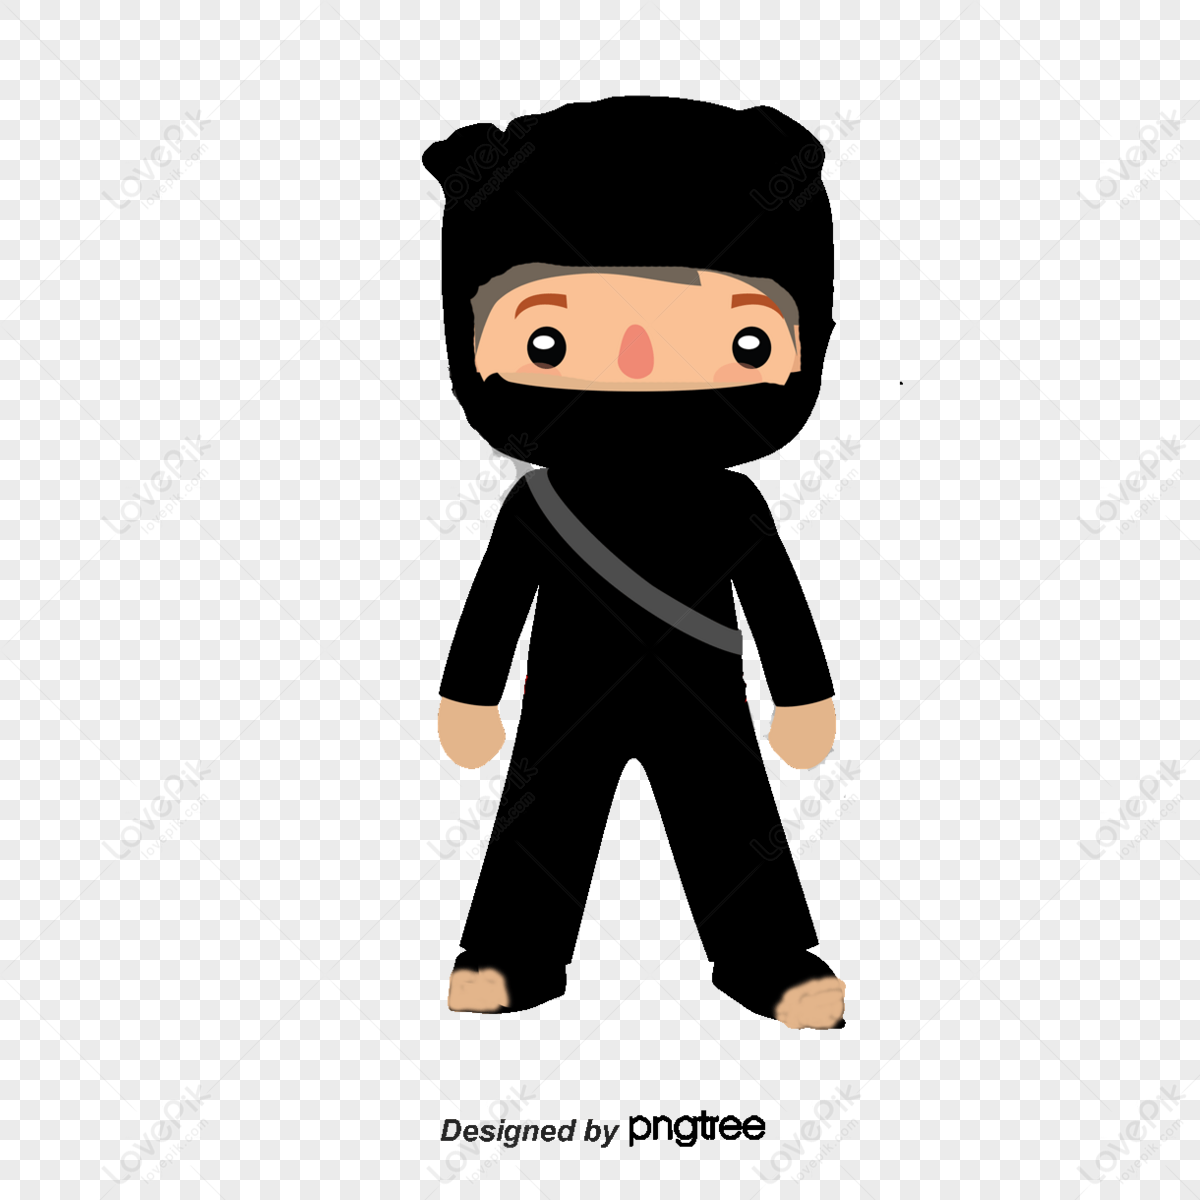 Hình ảnh Ninja Samurai,nhật Bản,chiến Binh,vectơ Ninja PNG Miễn Phí Tải Về  - Lovepik